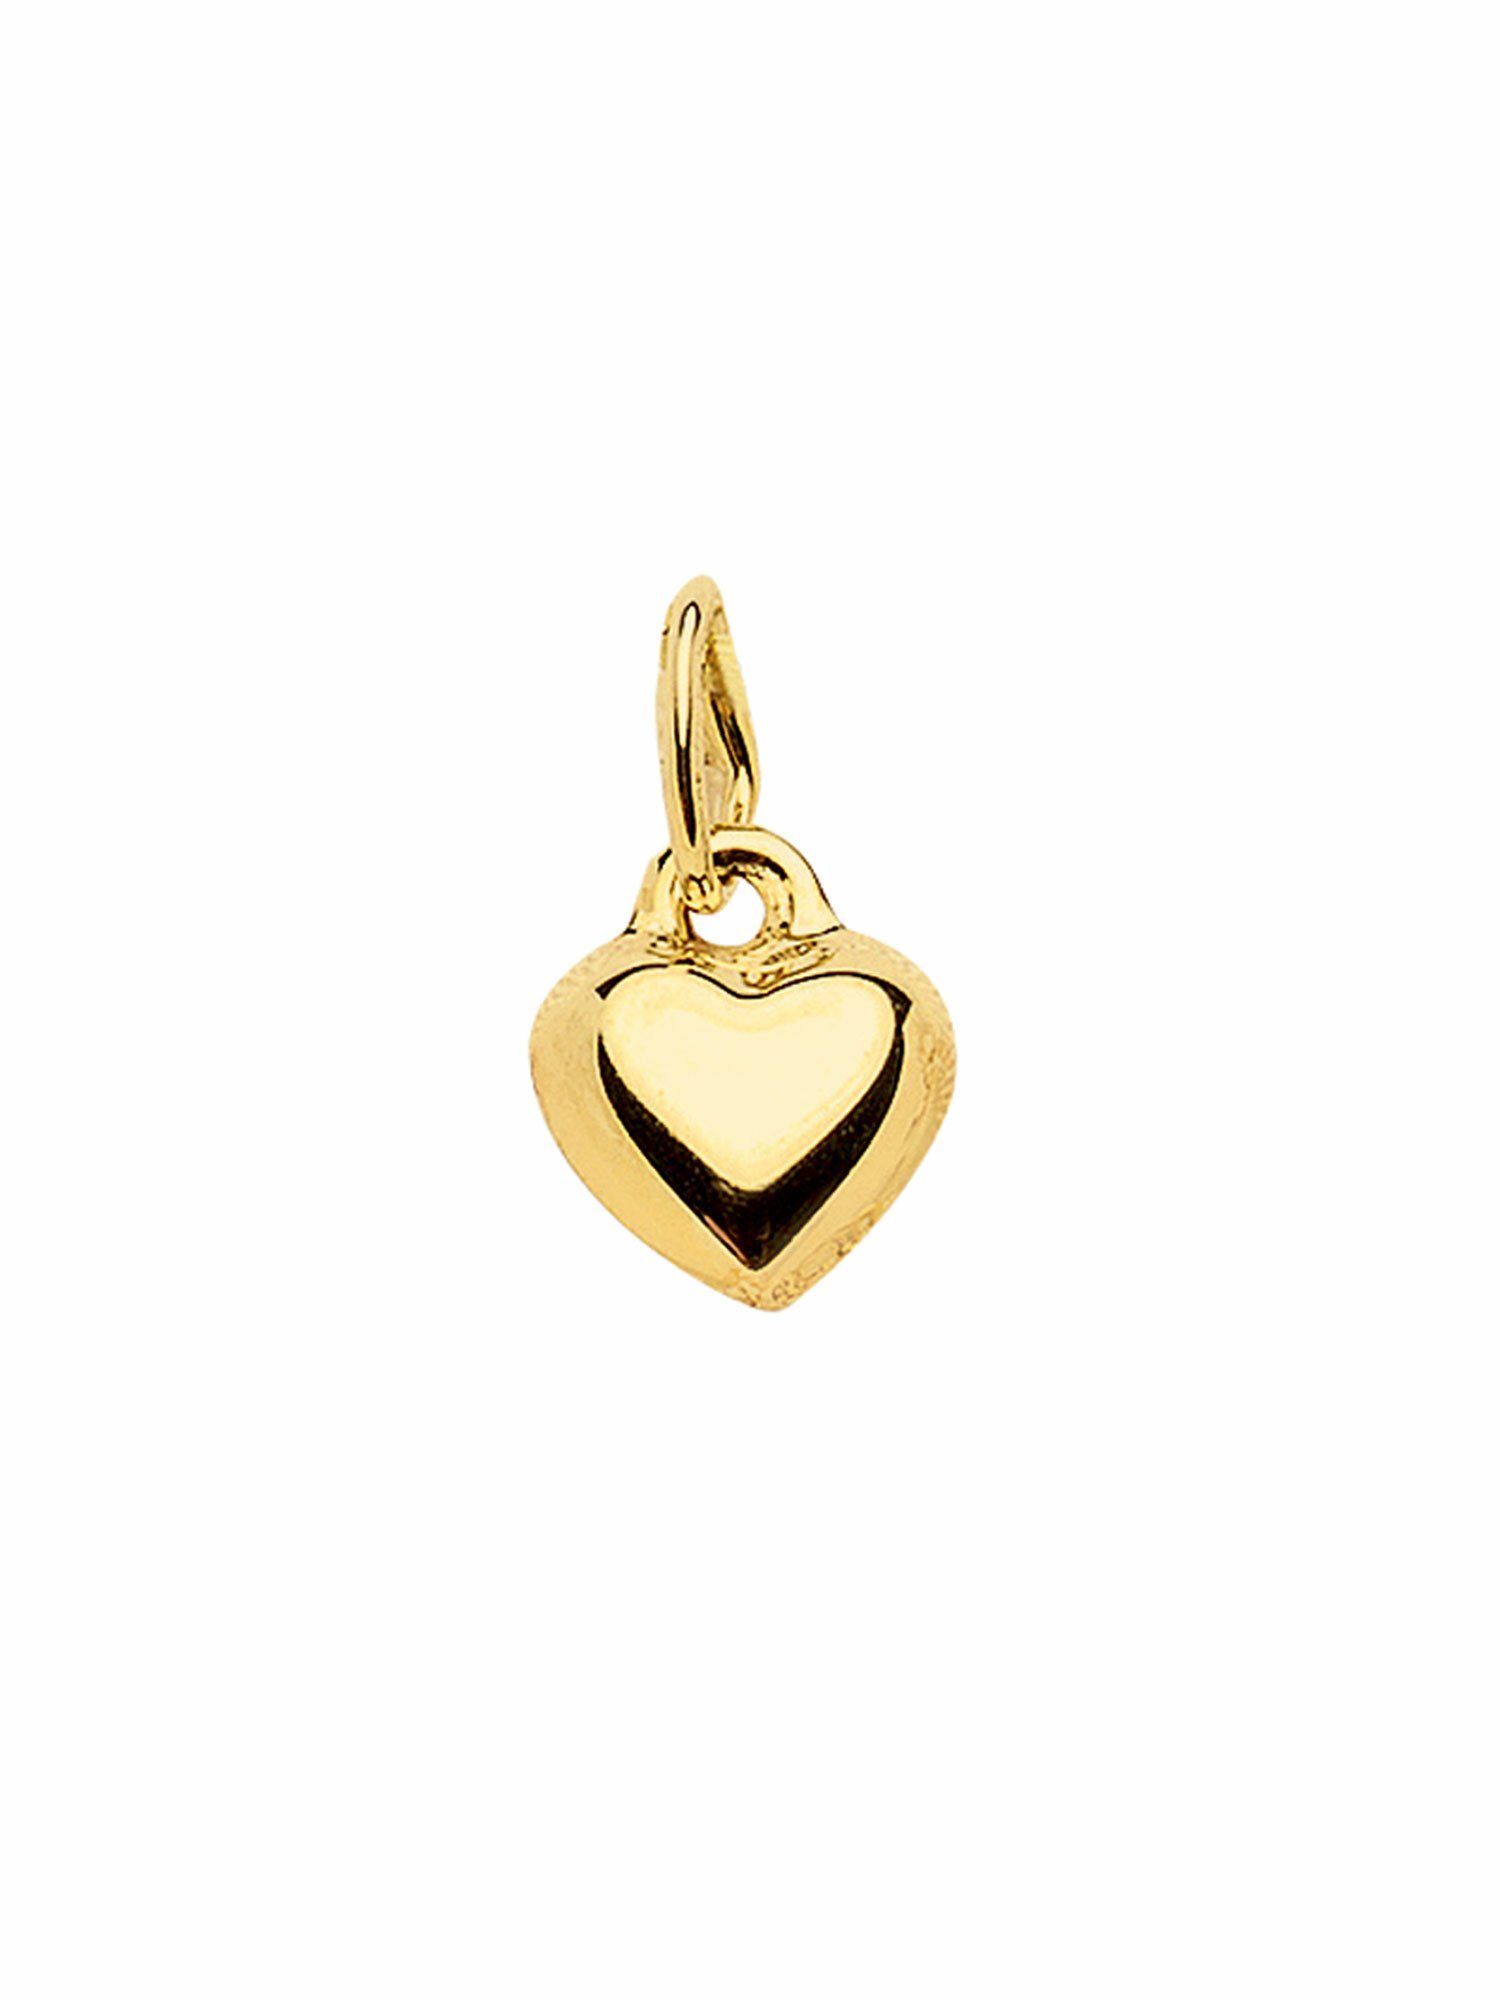 Adelia´s Kettenanhänger 333 Gold Anhänger Herz, Goldschmuck für Damen, Maße  - Breite 4,4 mm - Höhe 3 mm